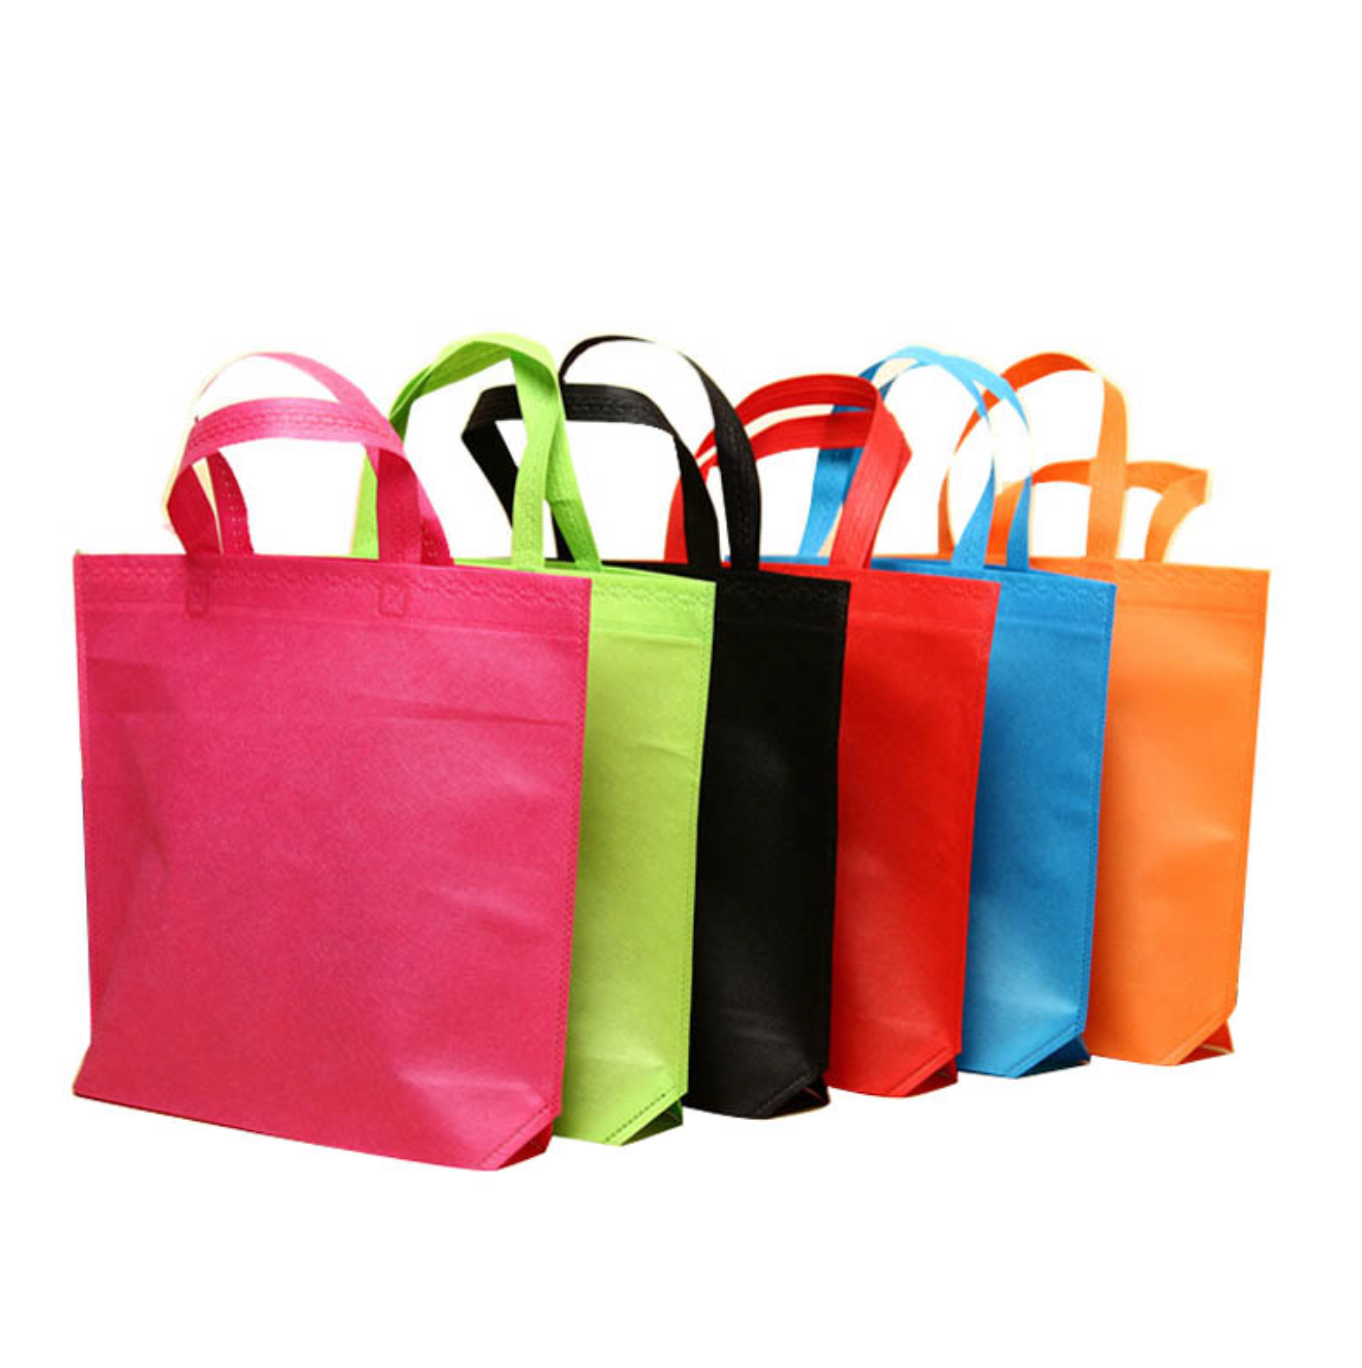 不織布覆膜購物袋環保袋印刷- 禮品、贈品、客製化禮贈品專家| 禮歐禮贈品